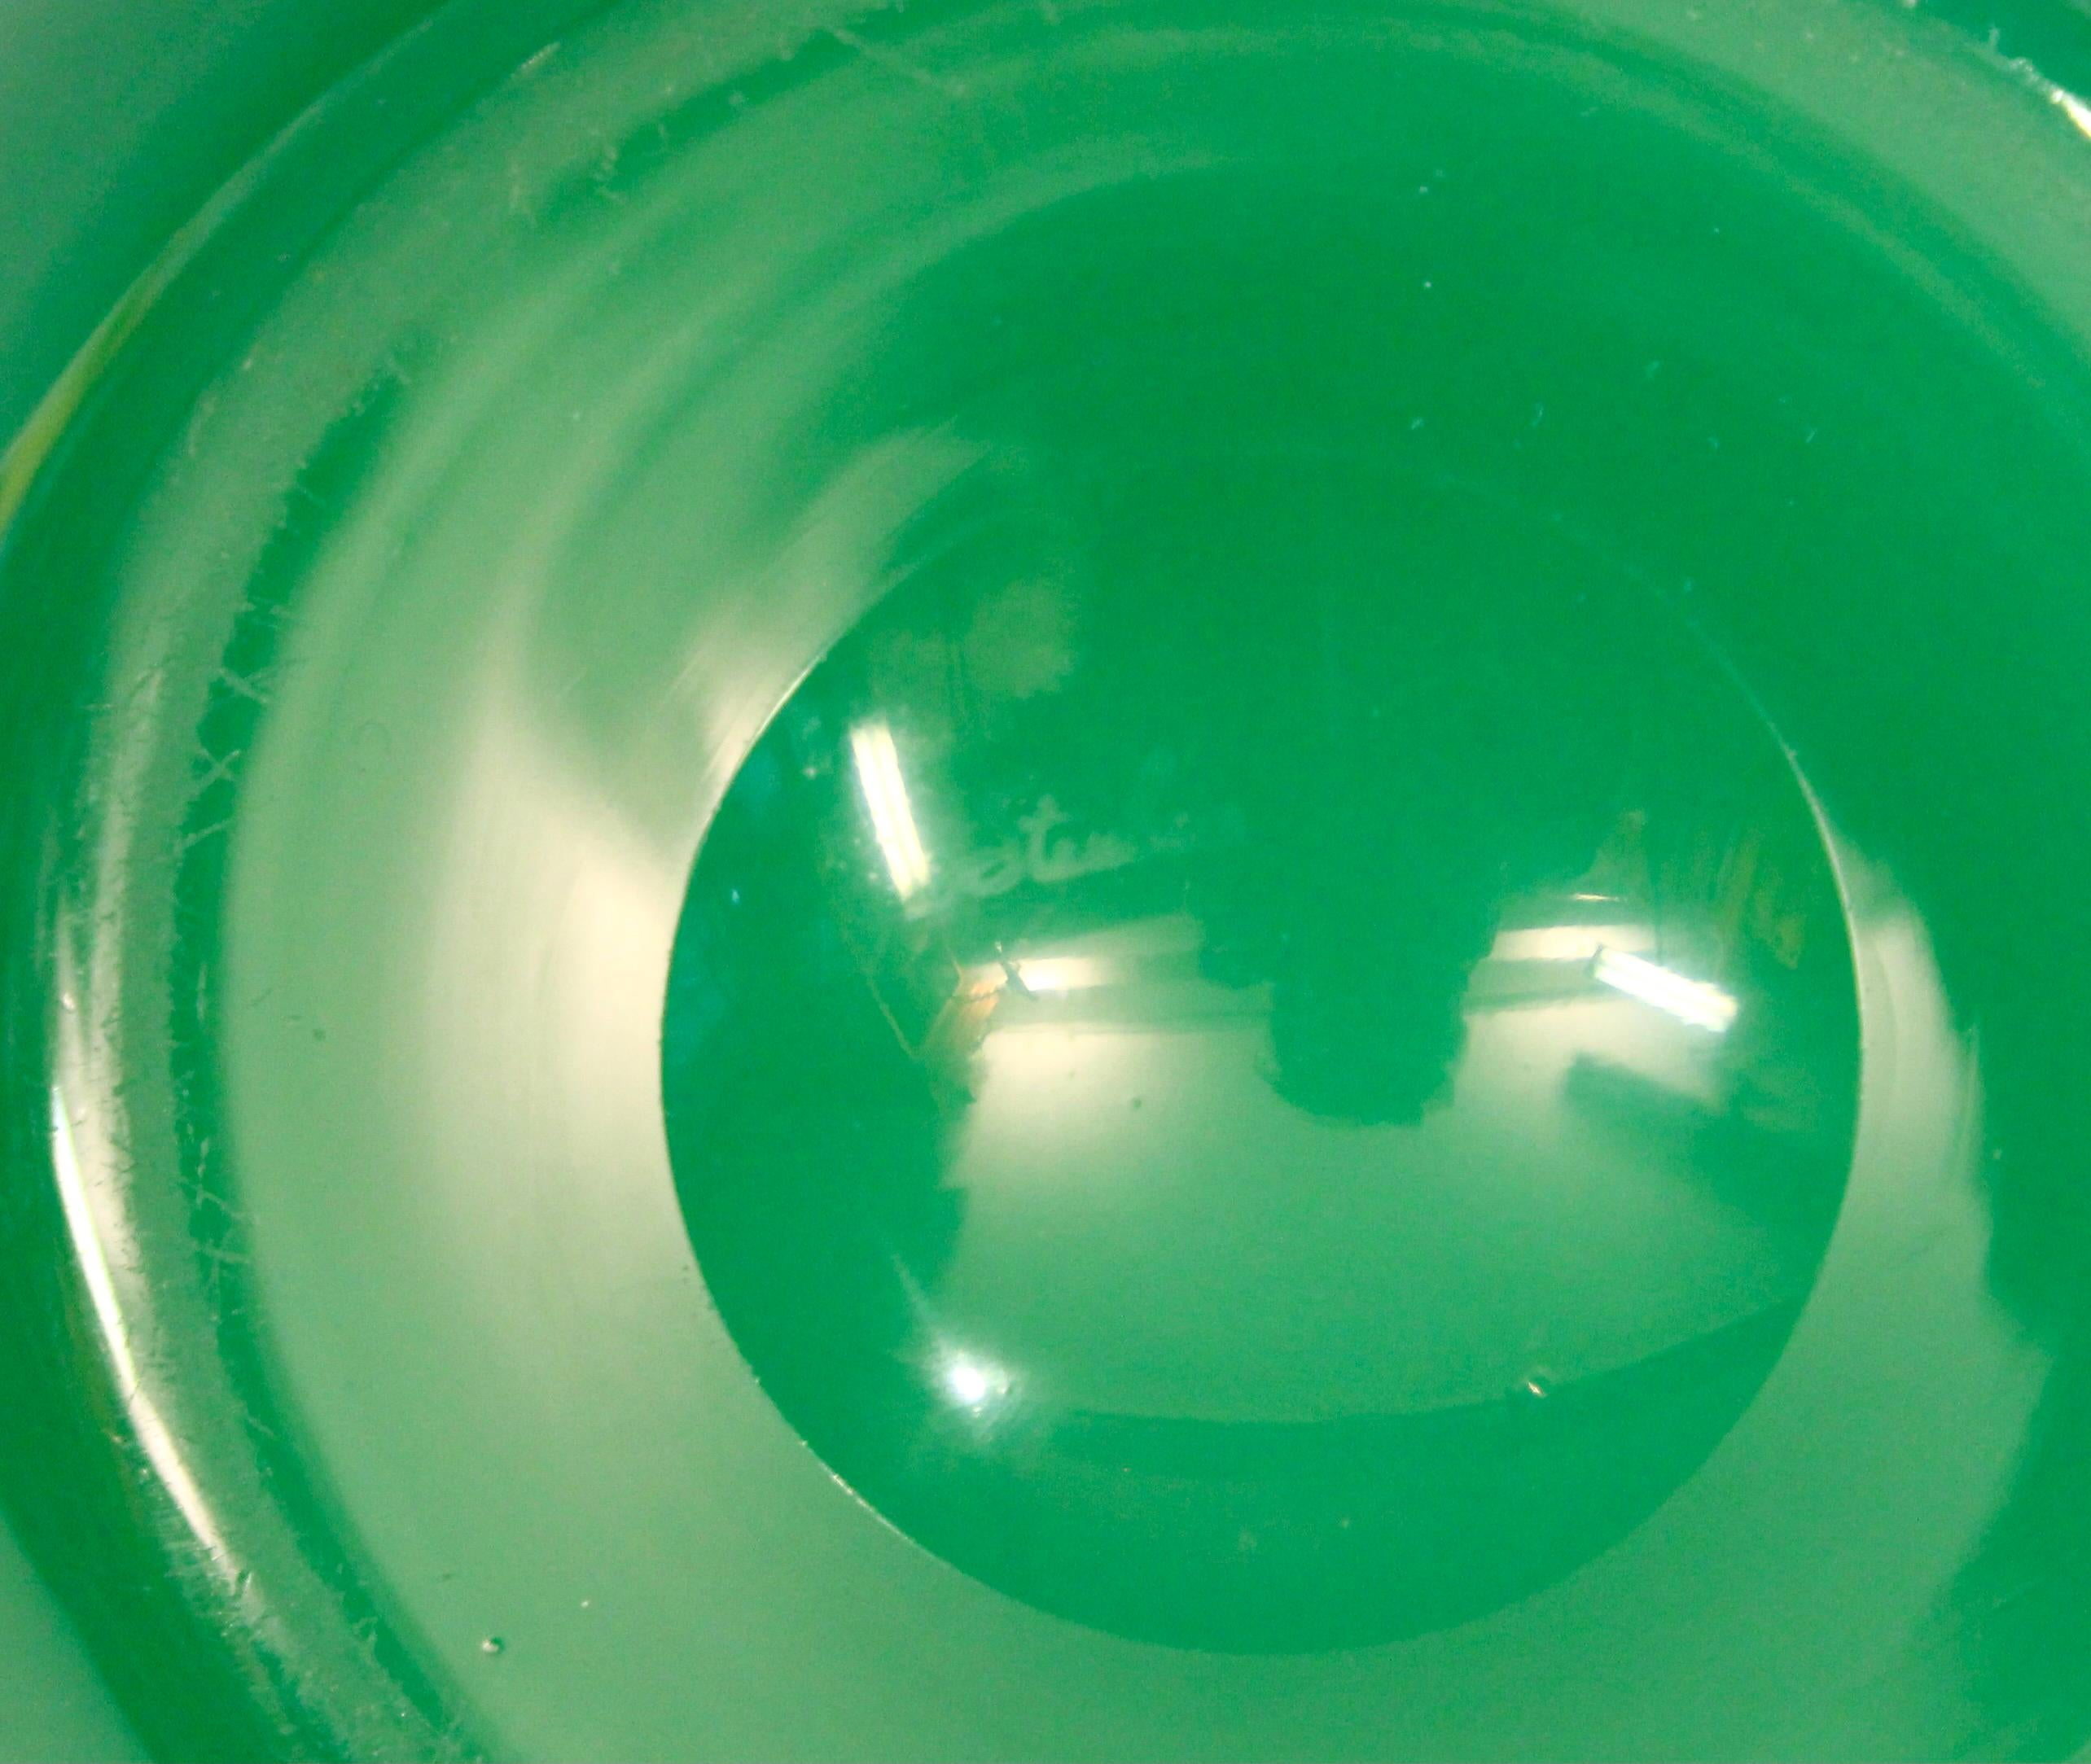 Antique Steuben Glass Vase Carder Apple Jade Green Art Deco Signed 8